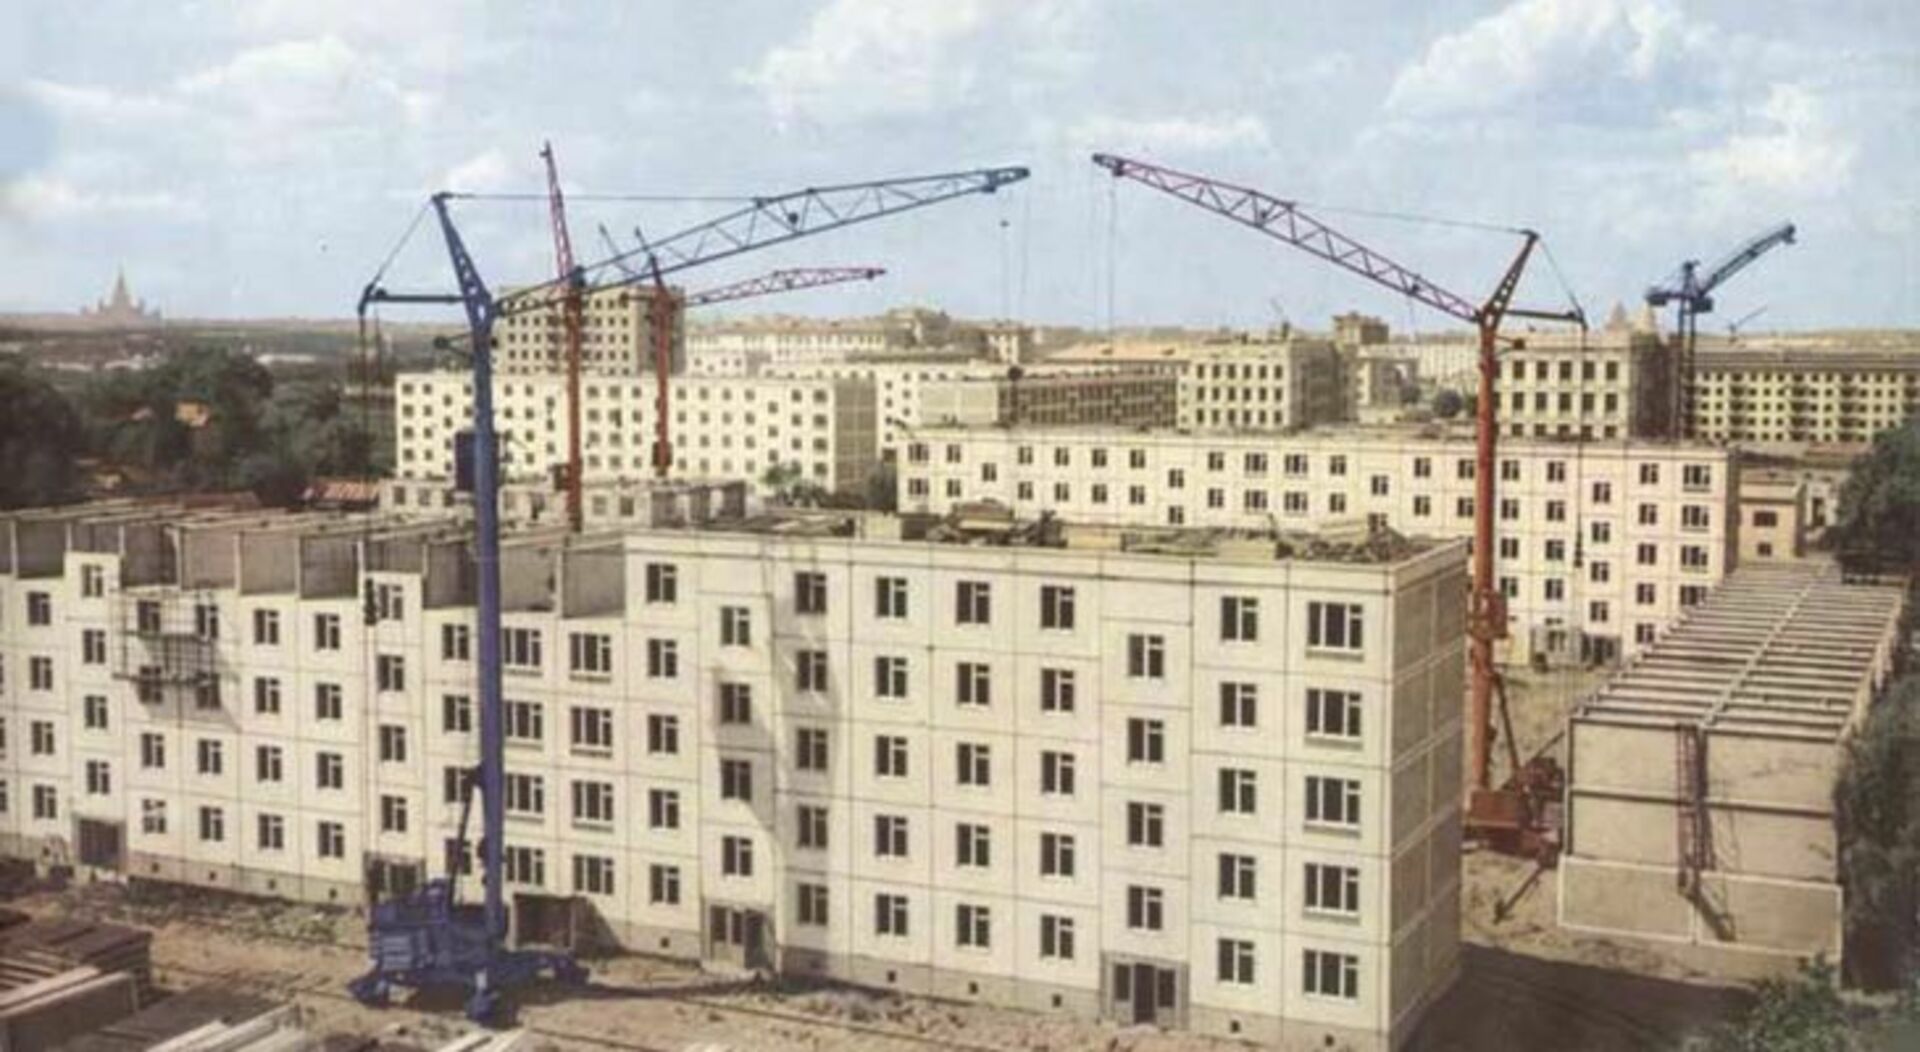 Строительство в советское время